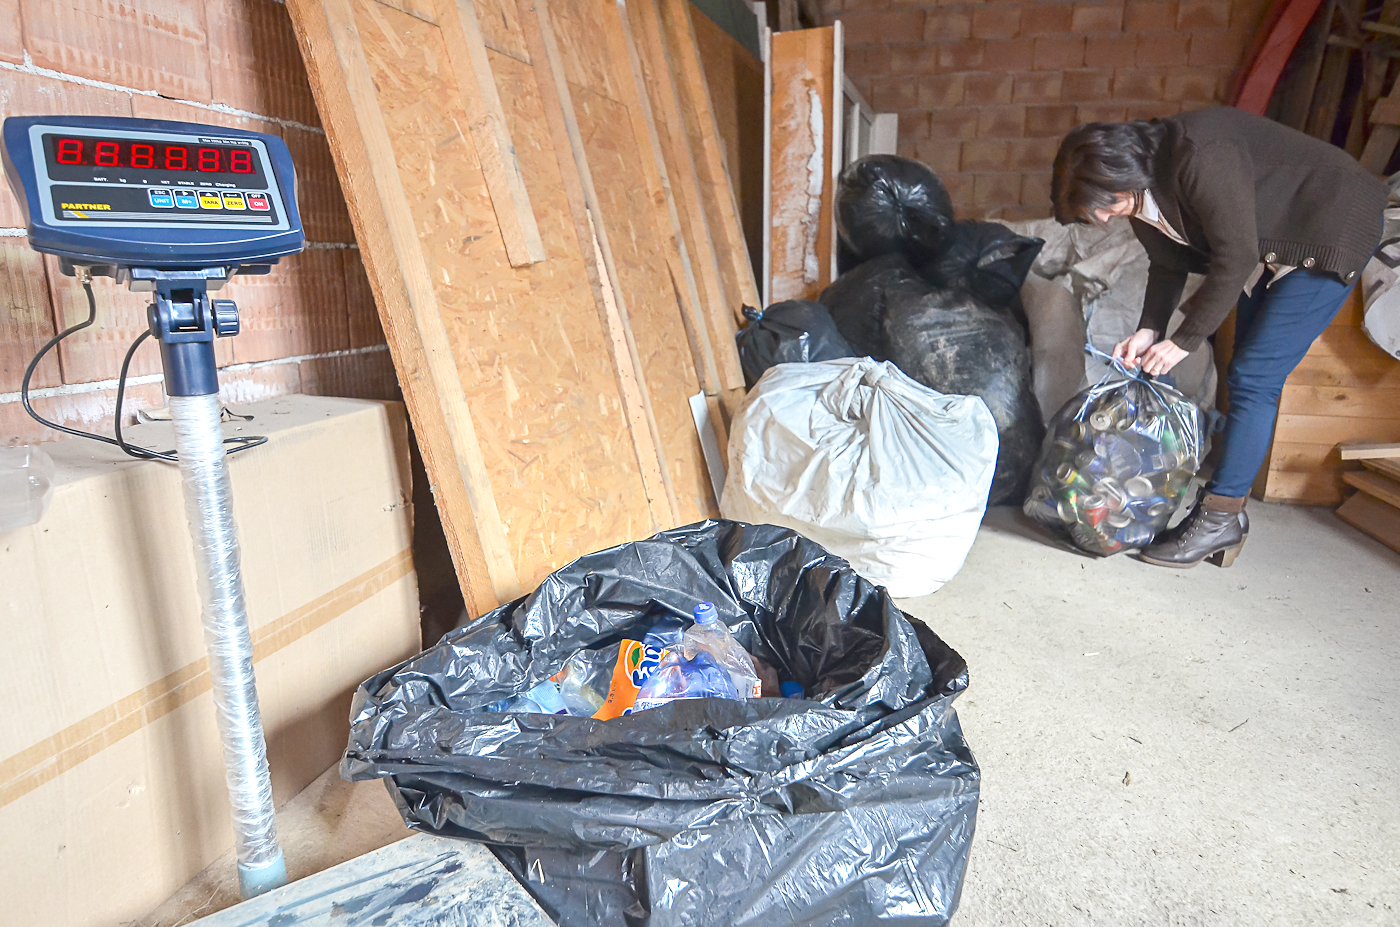 Nehezen indult, de egyre népszerűbb a szelektív gyűjtés - Ahol hulladékkal fizetnek a szemétszállításért